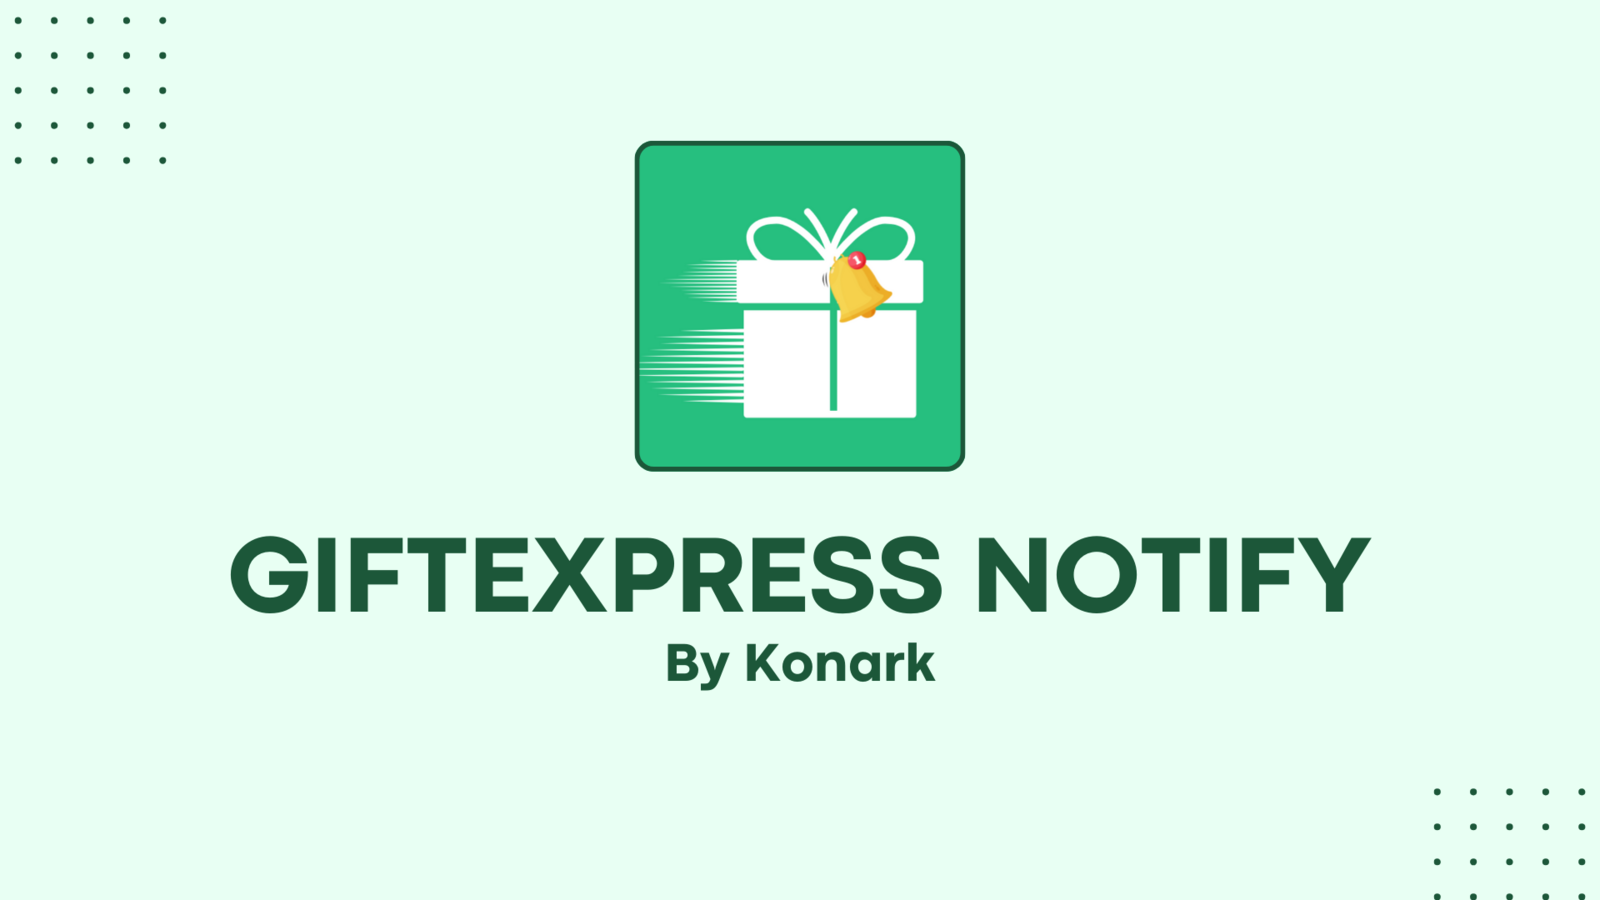 GiftExpress Notify